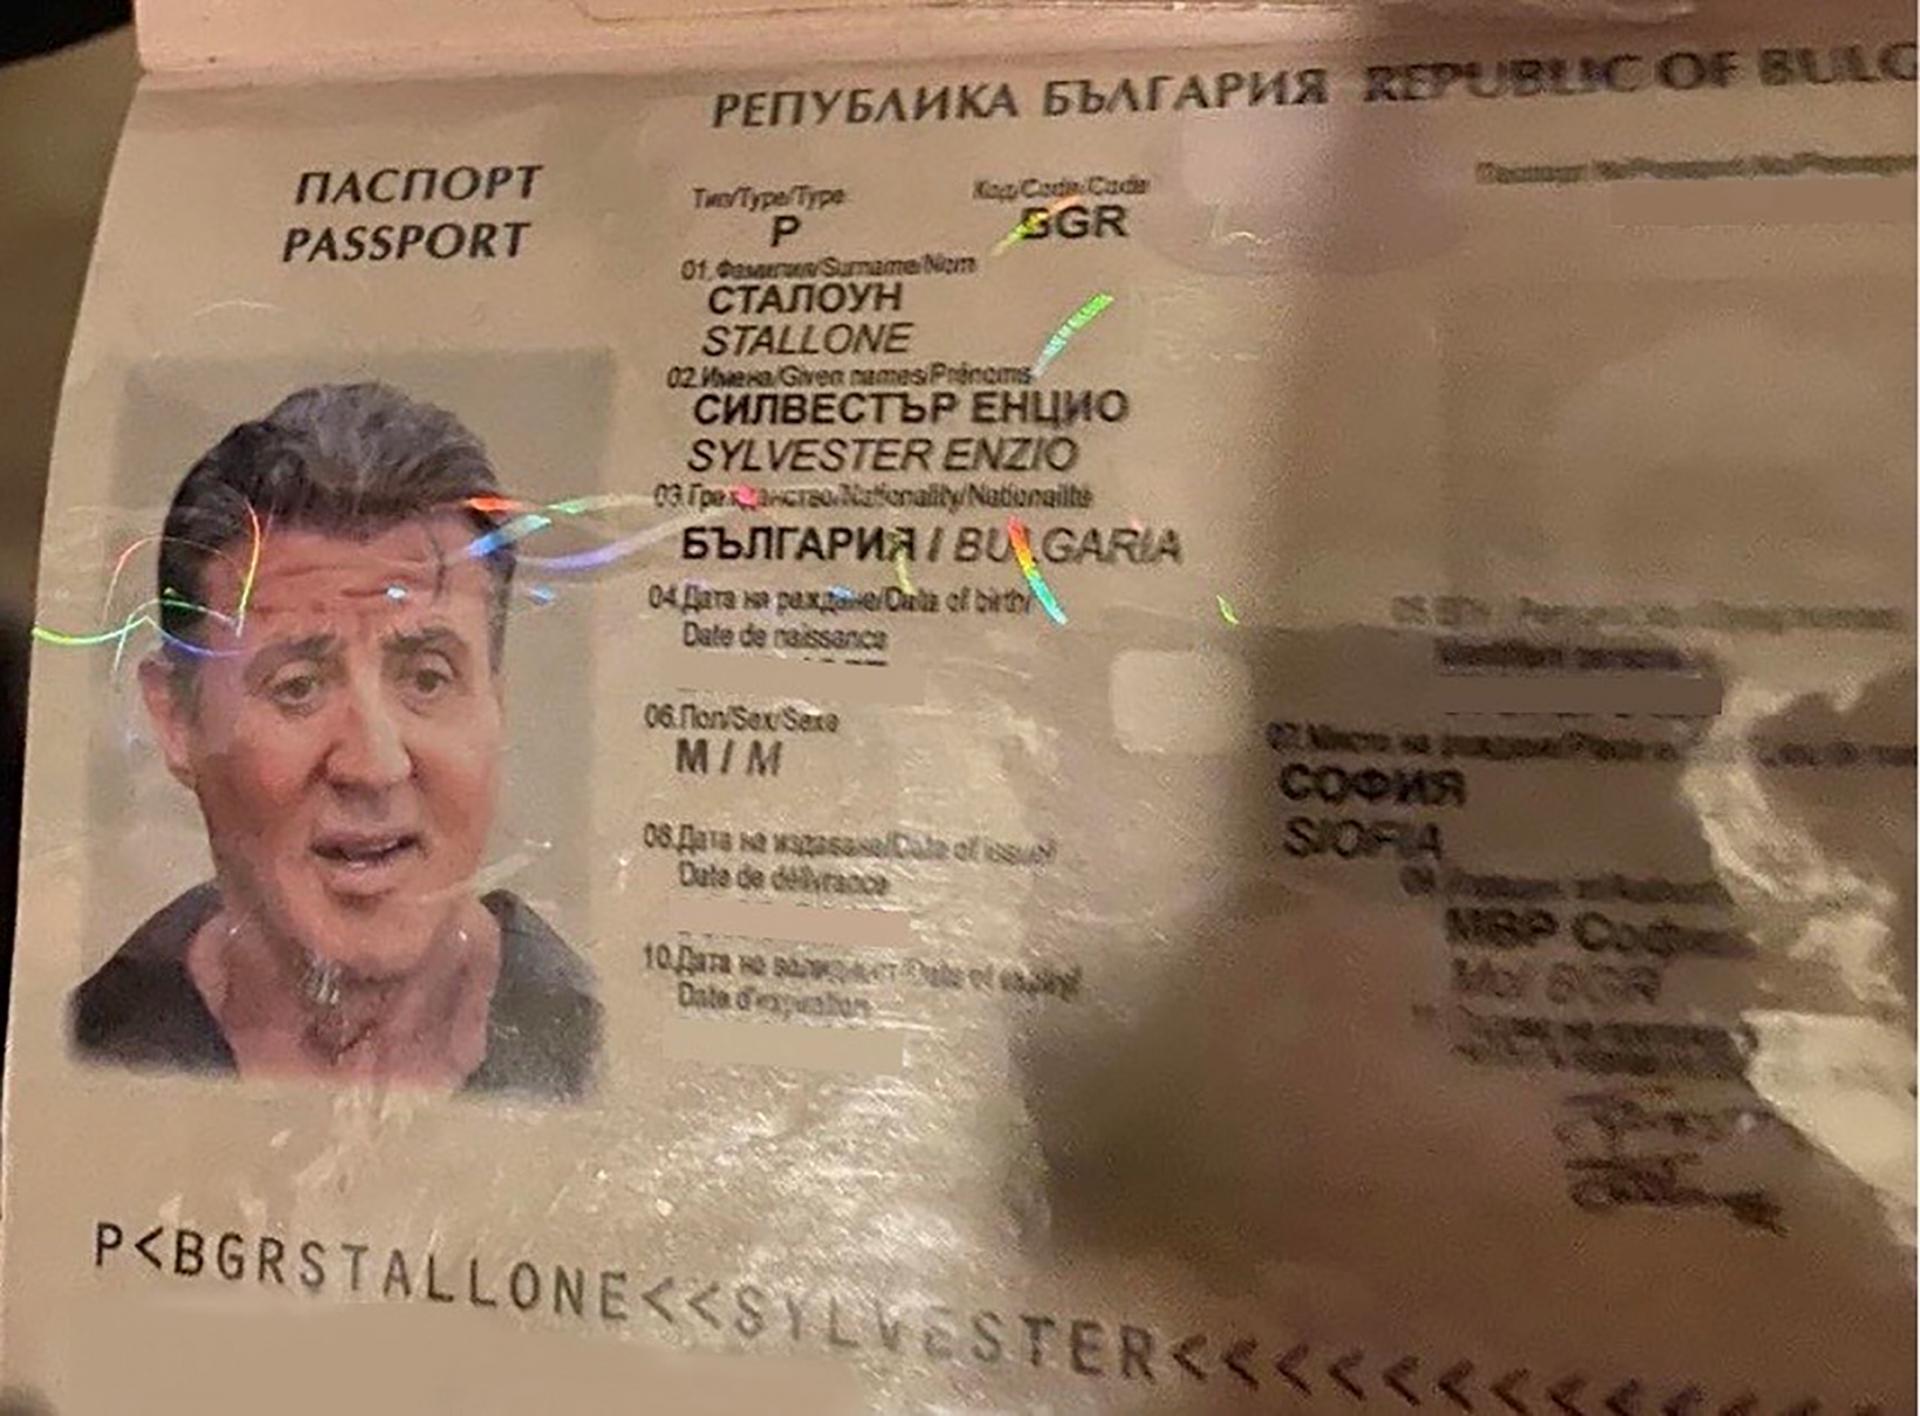 Uhićeni falsifikatori: Zaplijenjena putovnica s fotografijom Stallonea